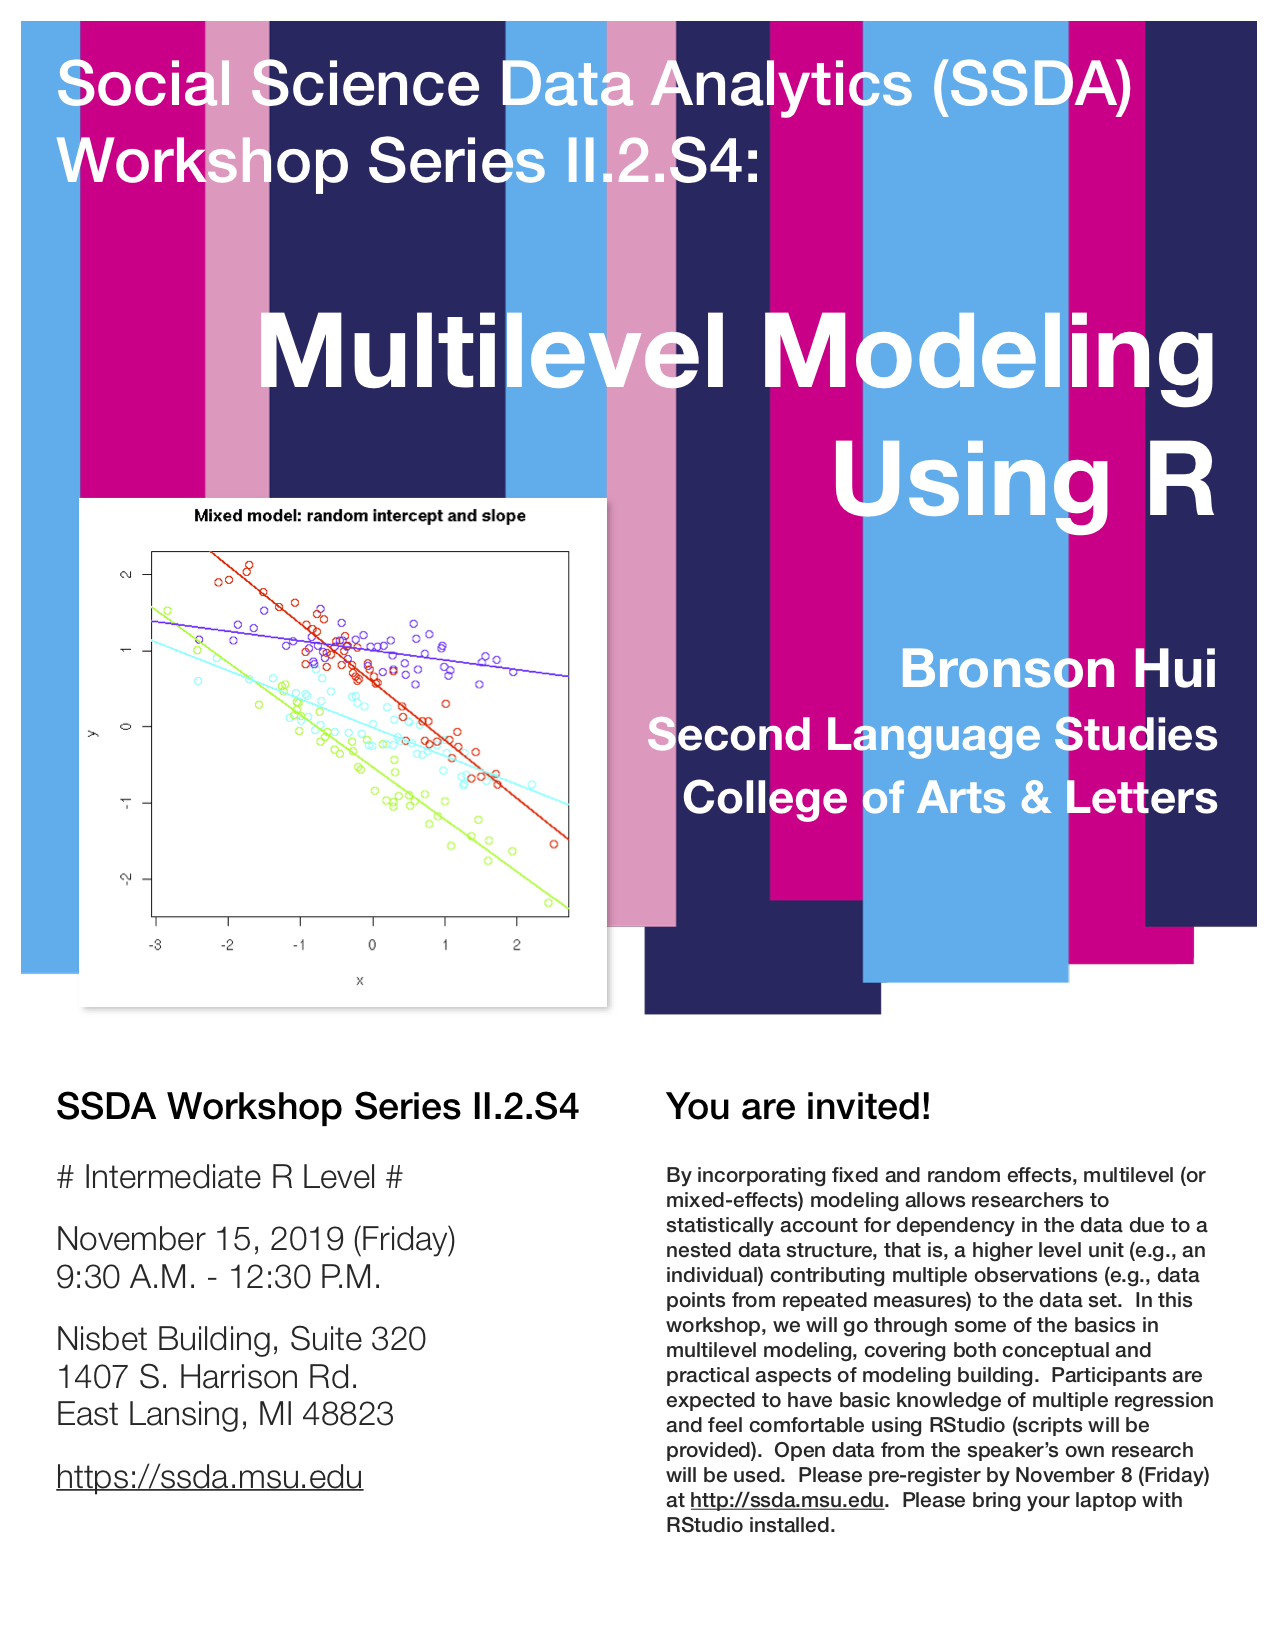 multilevel modeling using r